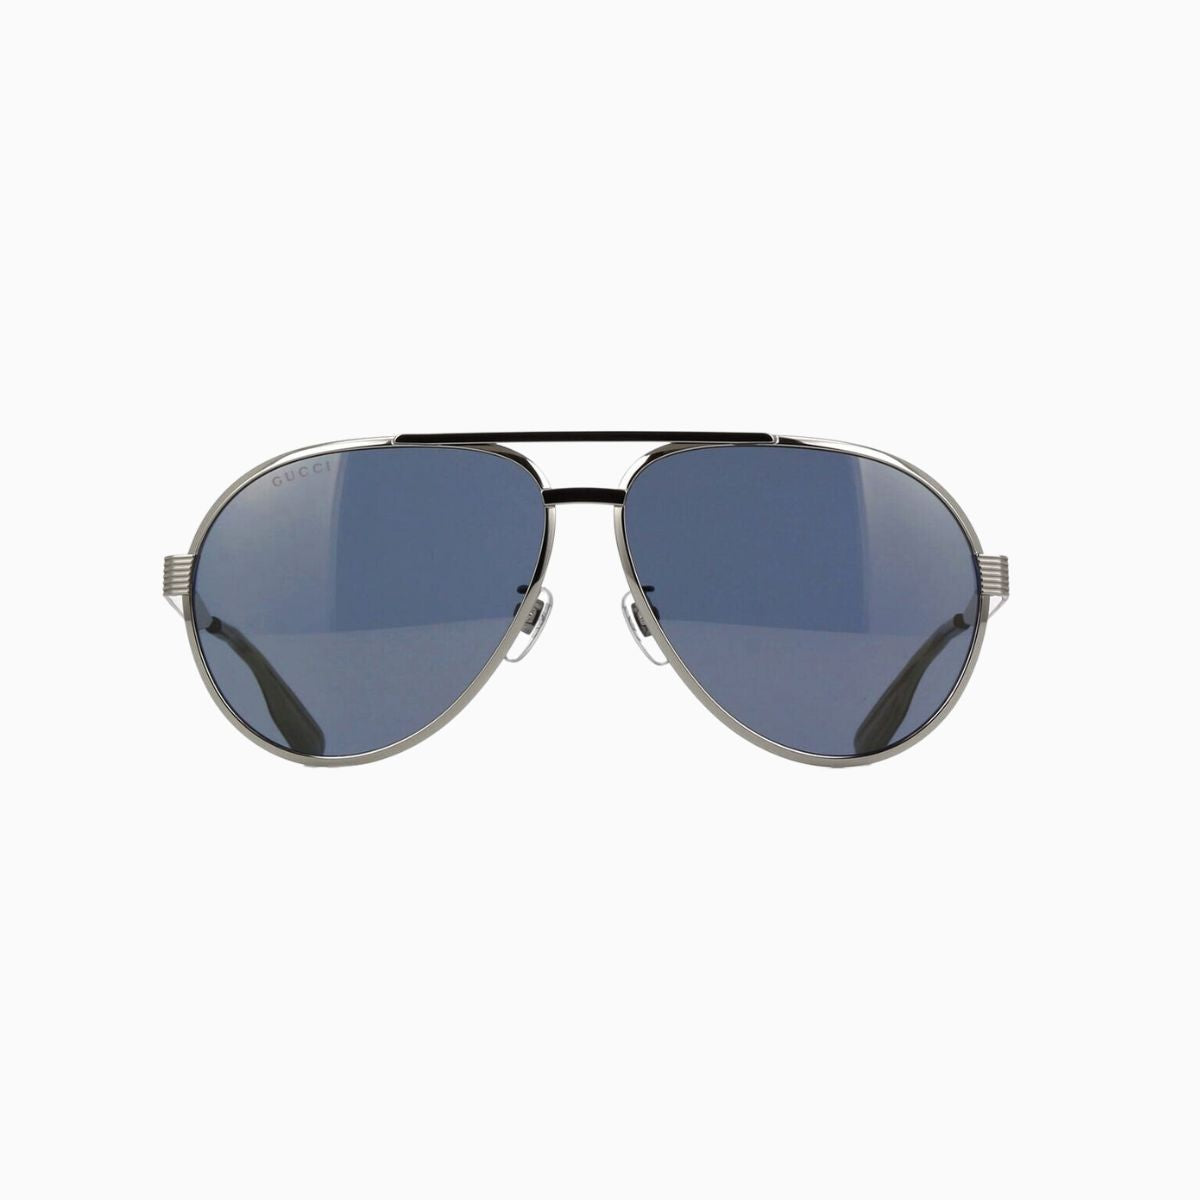 Men's Aviator Frame Sunglasses